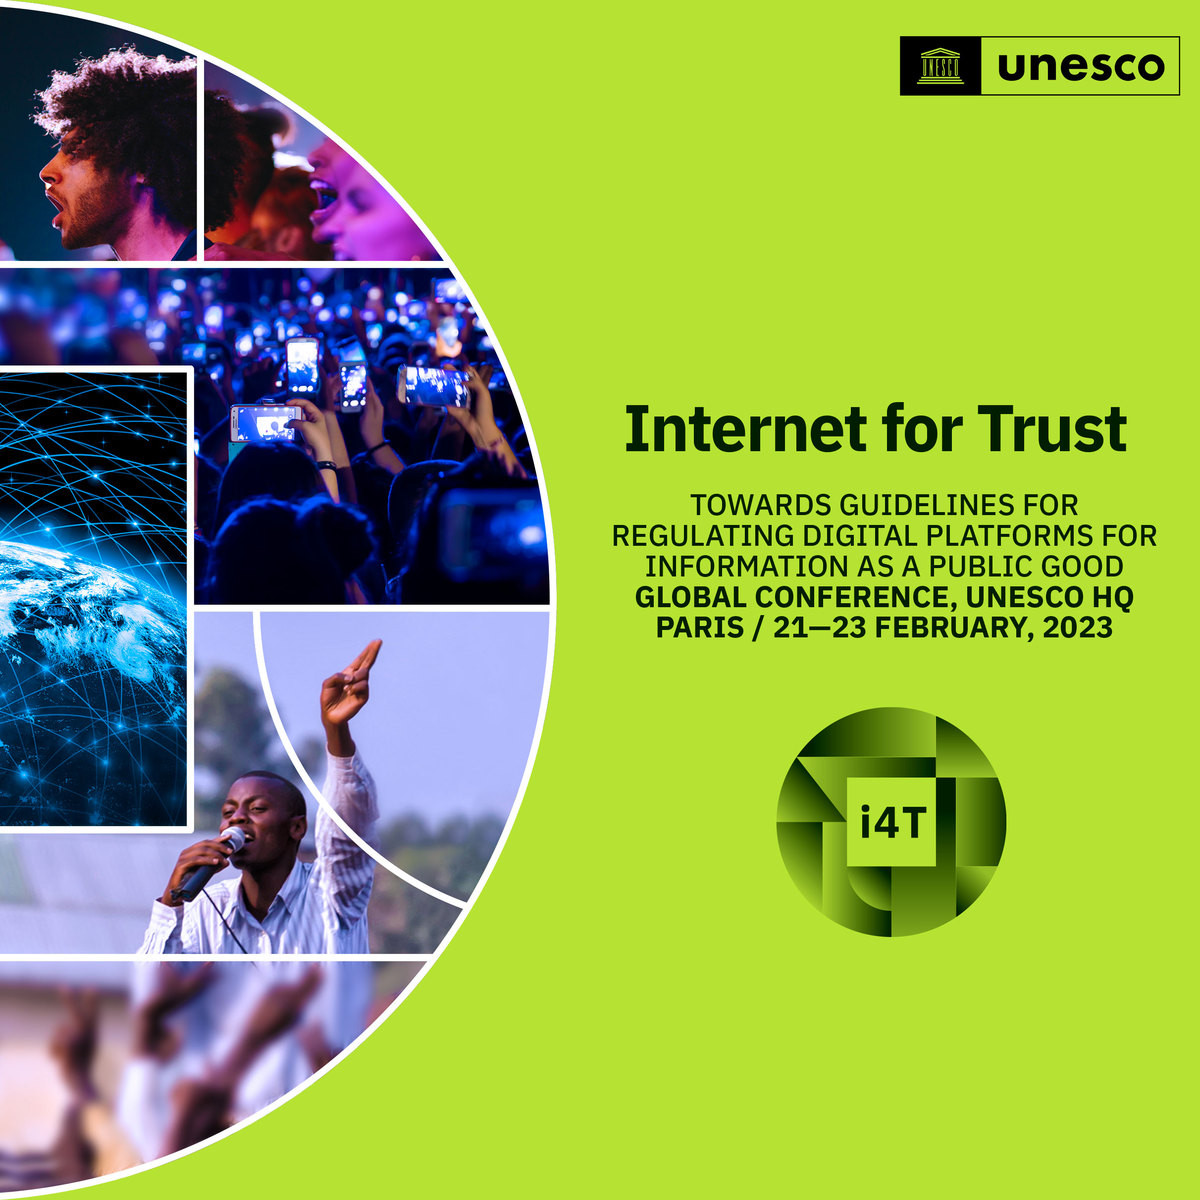 UNESCO tổ chức hội nghị quốc tế về thông tin sai lệch và phát ngôn thù hận trên mạng